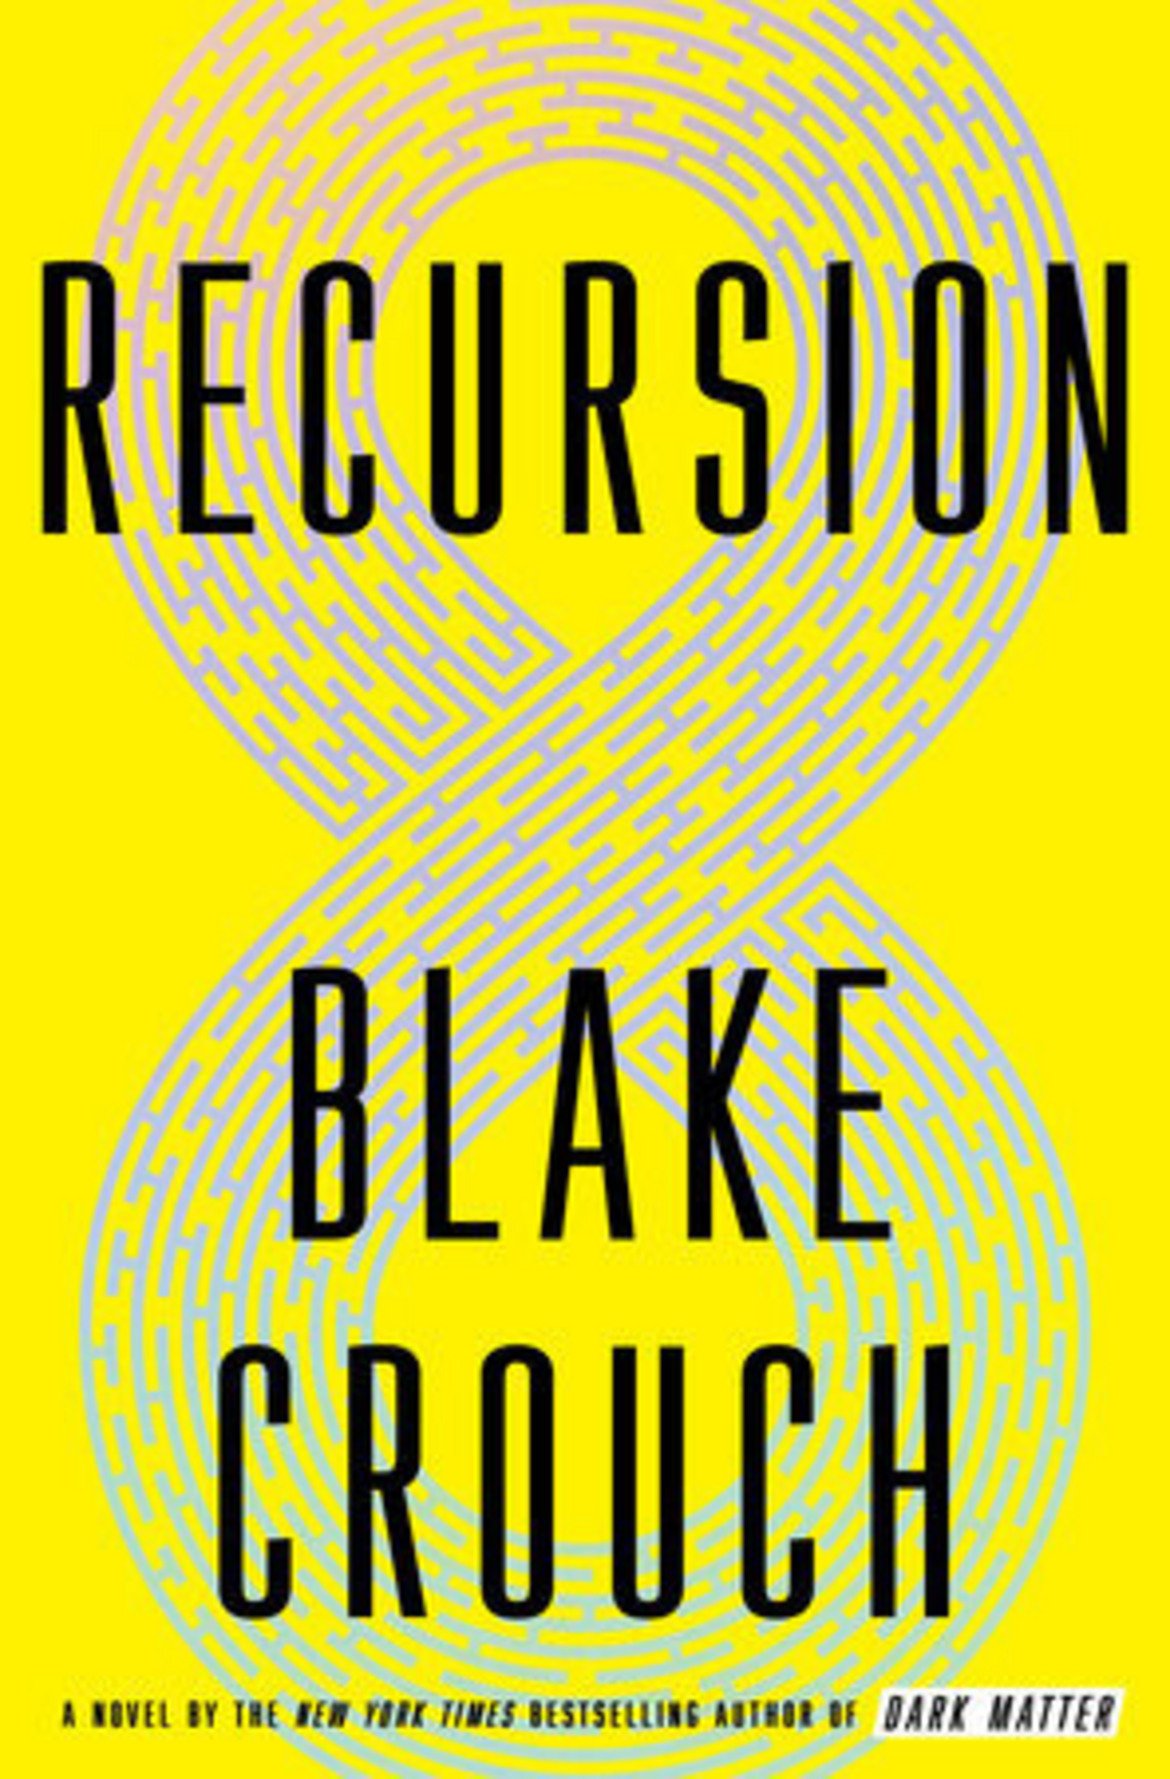  "Рекурсия" 
Блейк Крауч печели в категорията за научна фантастика с книгата си "Рекурсия" (Recursion). Той е известен с романите си за "Уейуърд Пайнс". 
